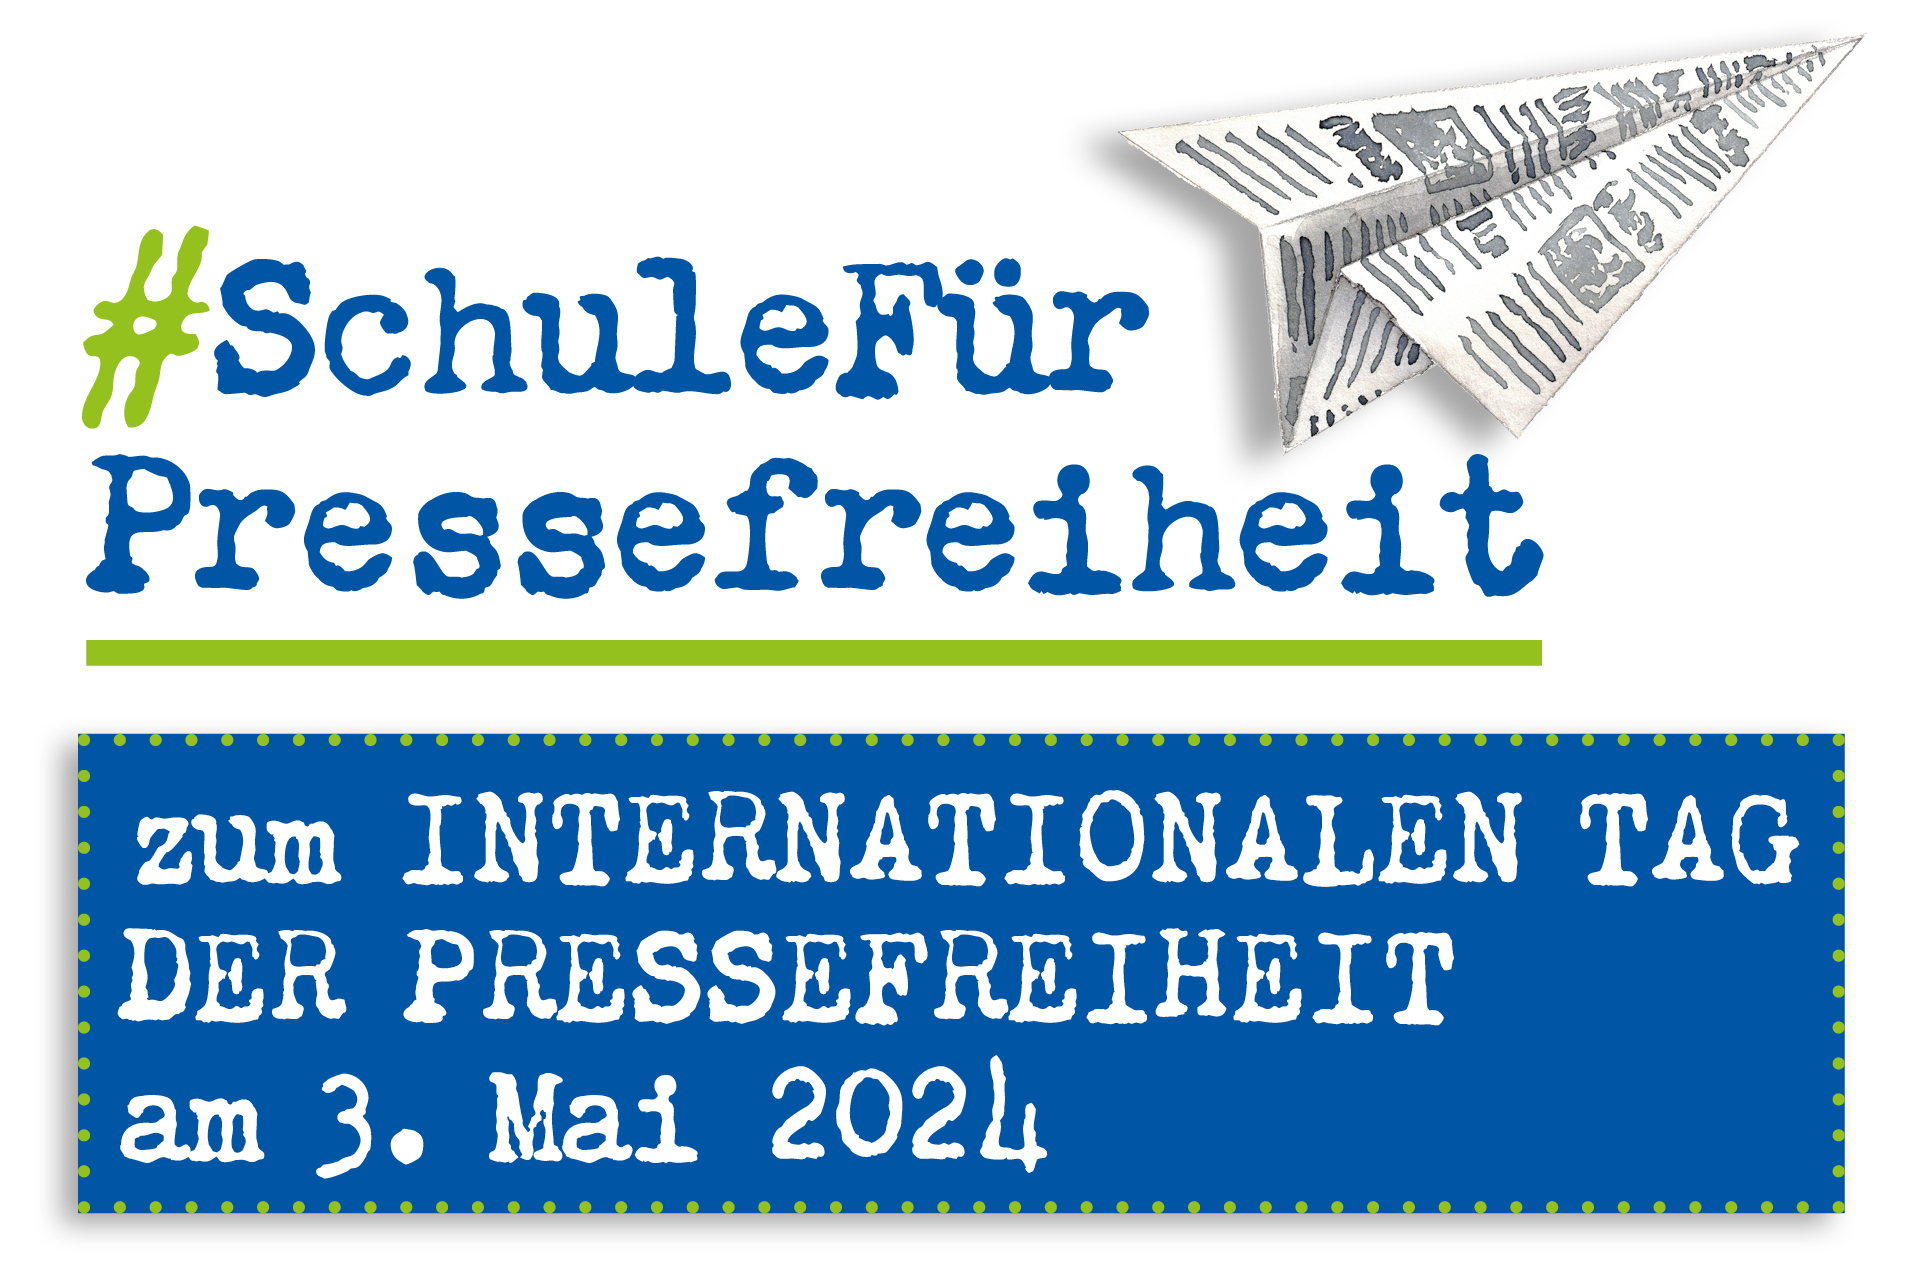 Logo #SchuleFürPressefreiheit